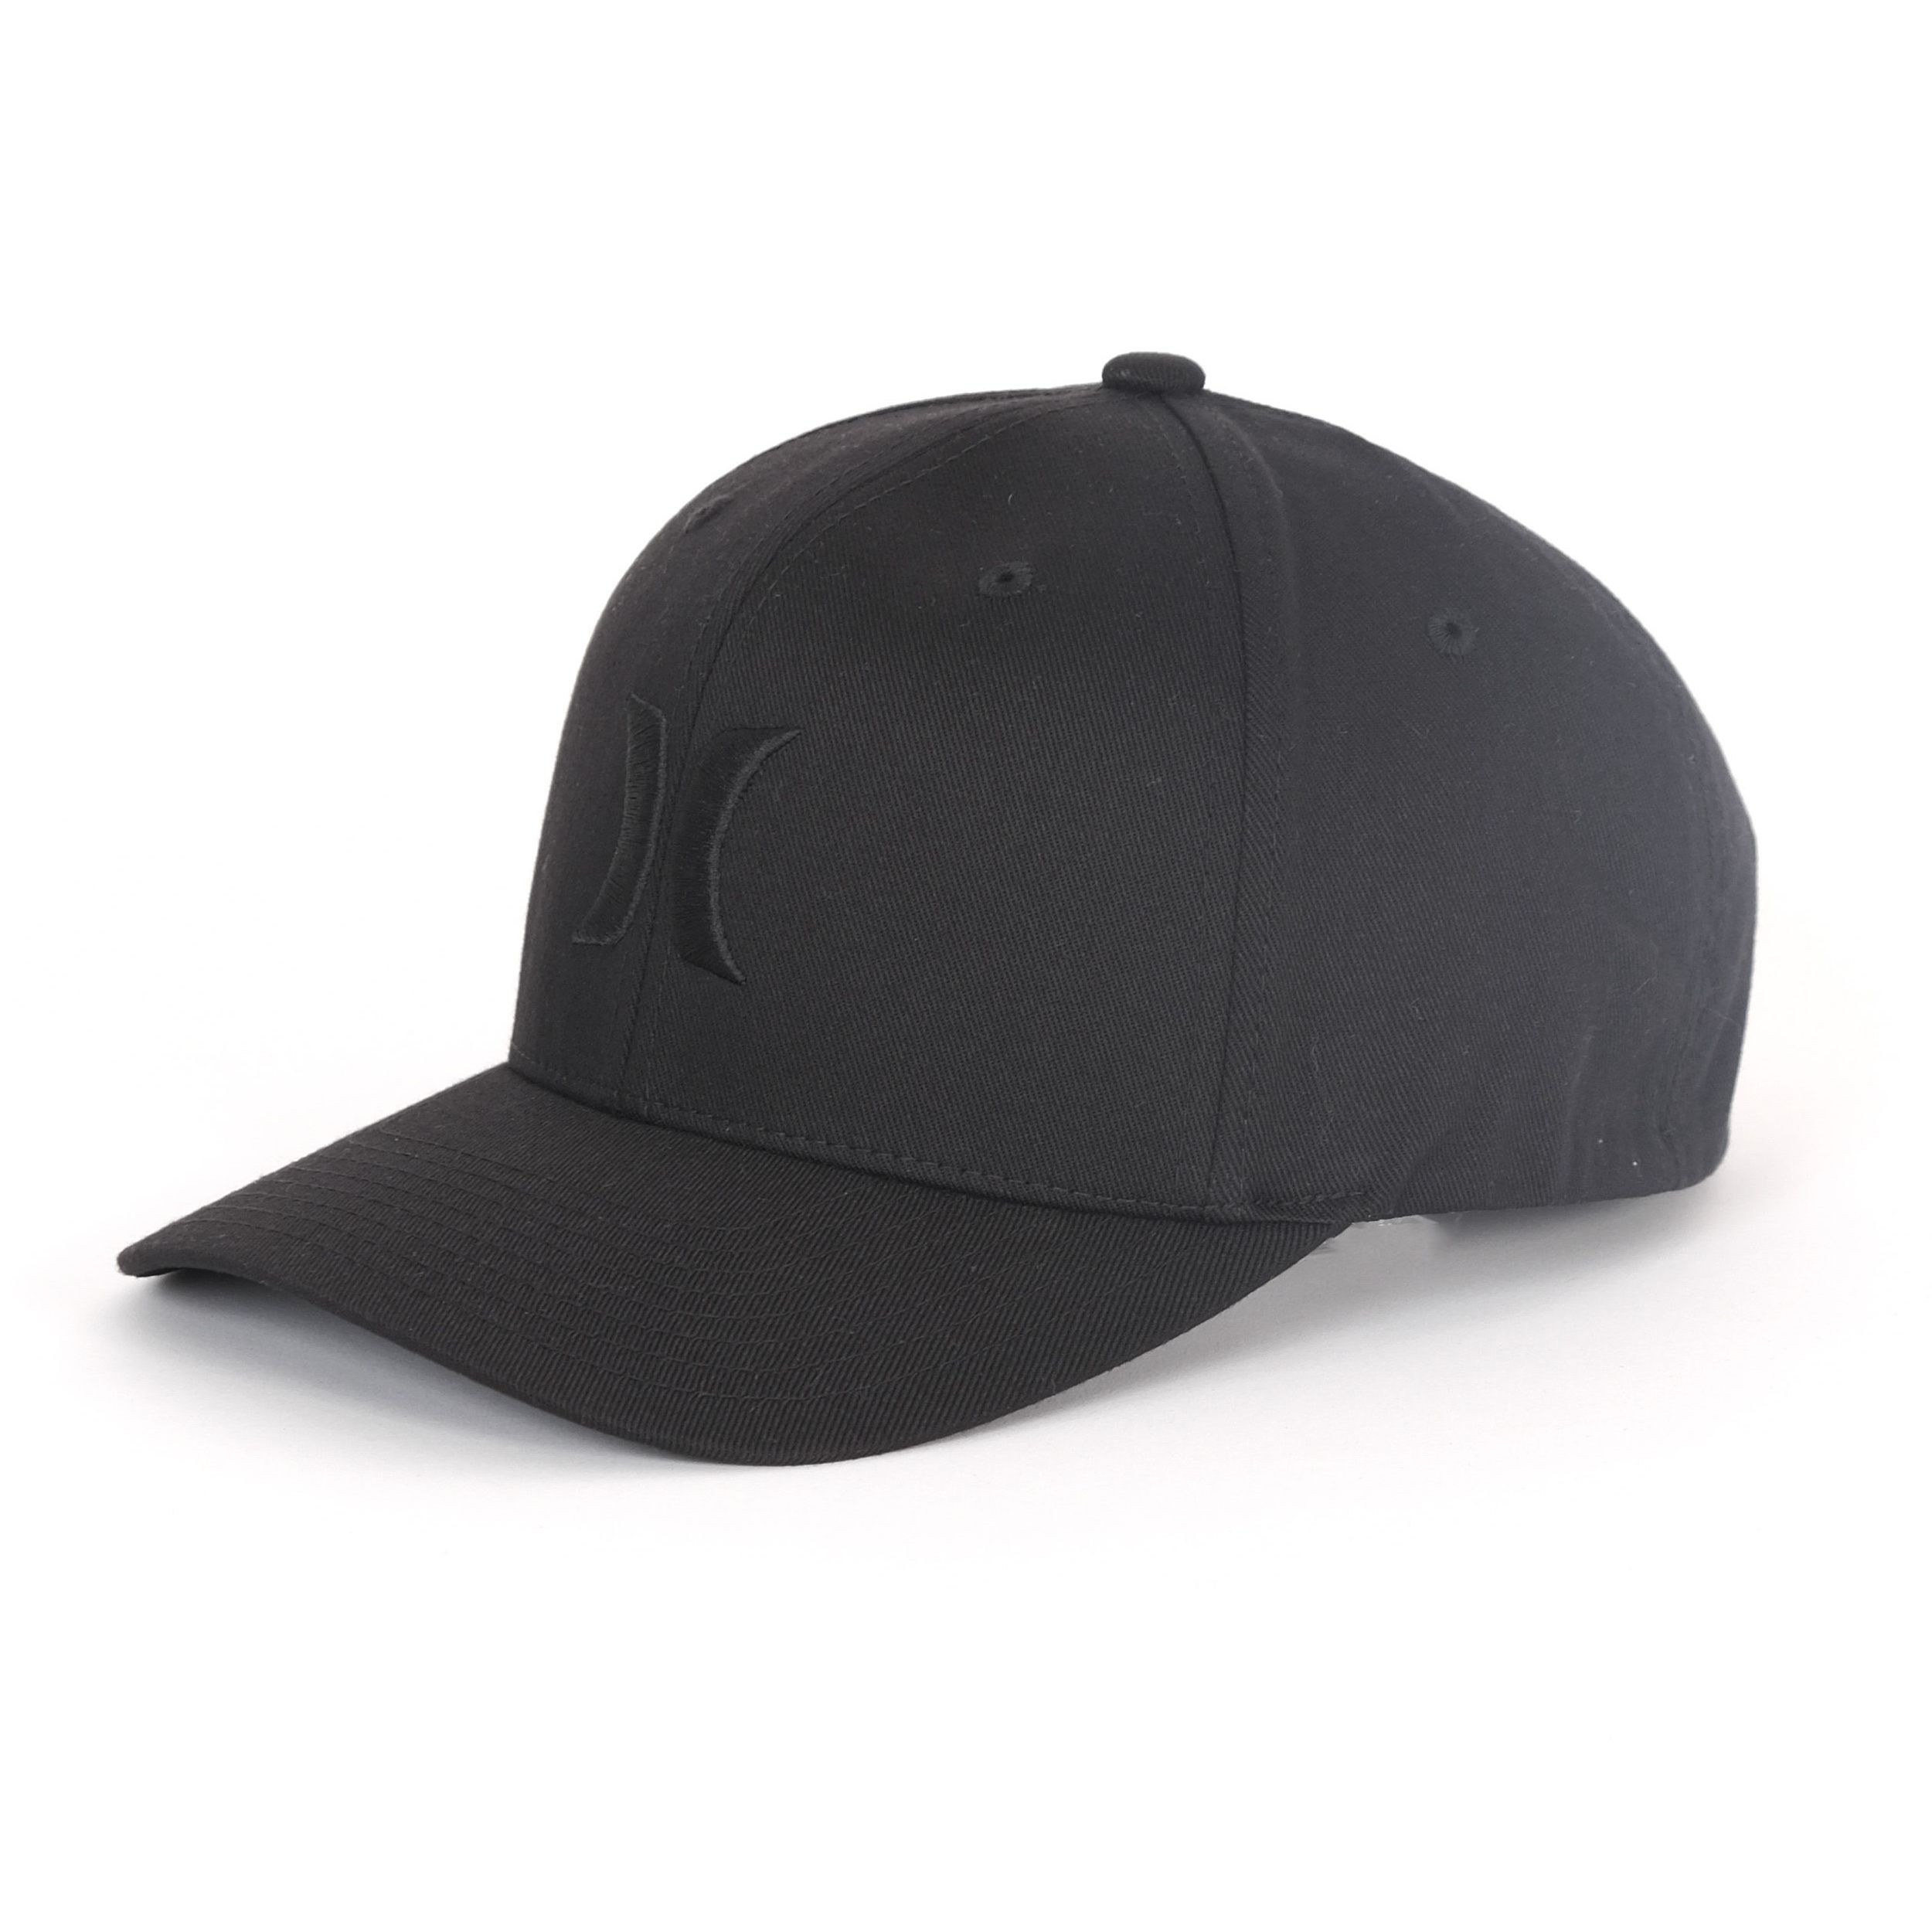 Hurley One & Only Hat Black Or Cool Grey Desssliza3